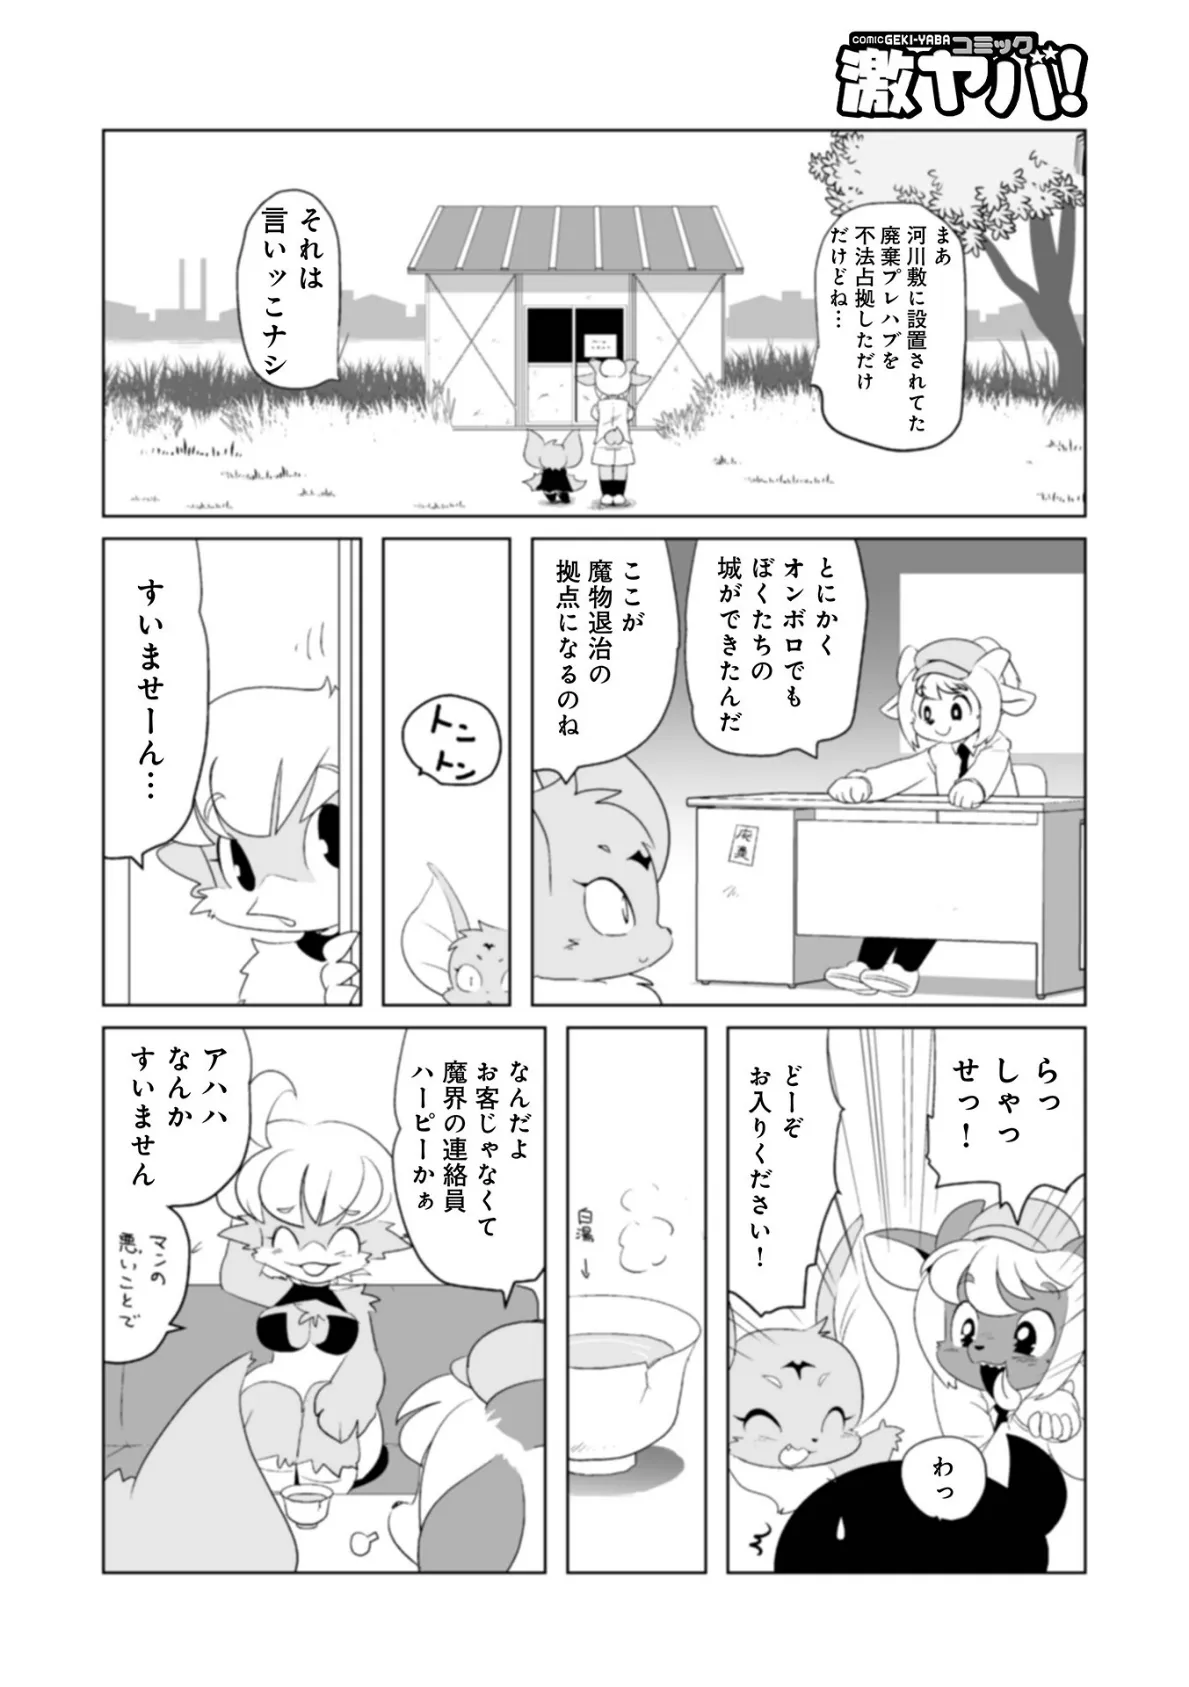 魔界探偵サバトくん第1巻 44ページ